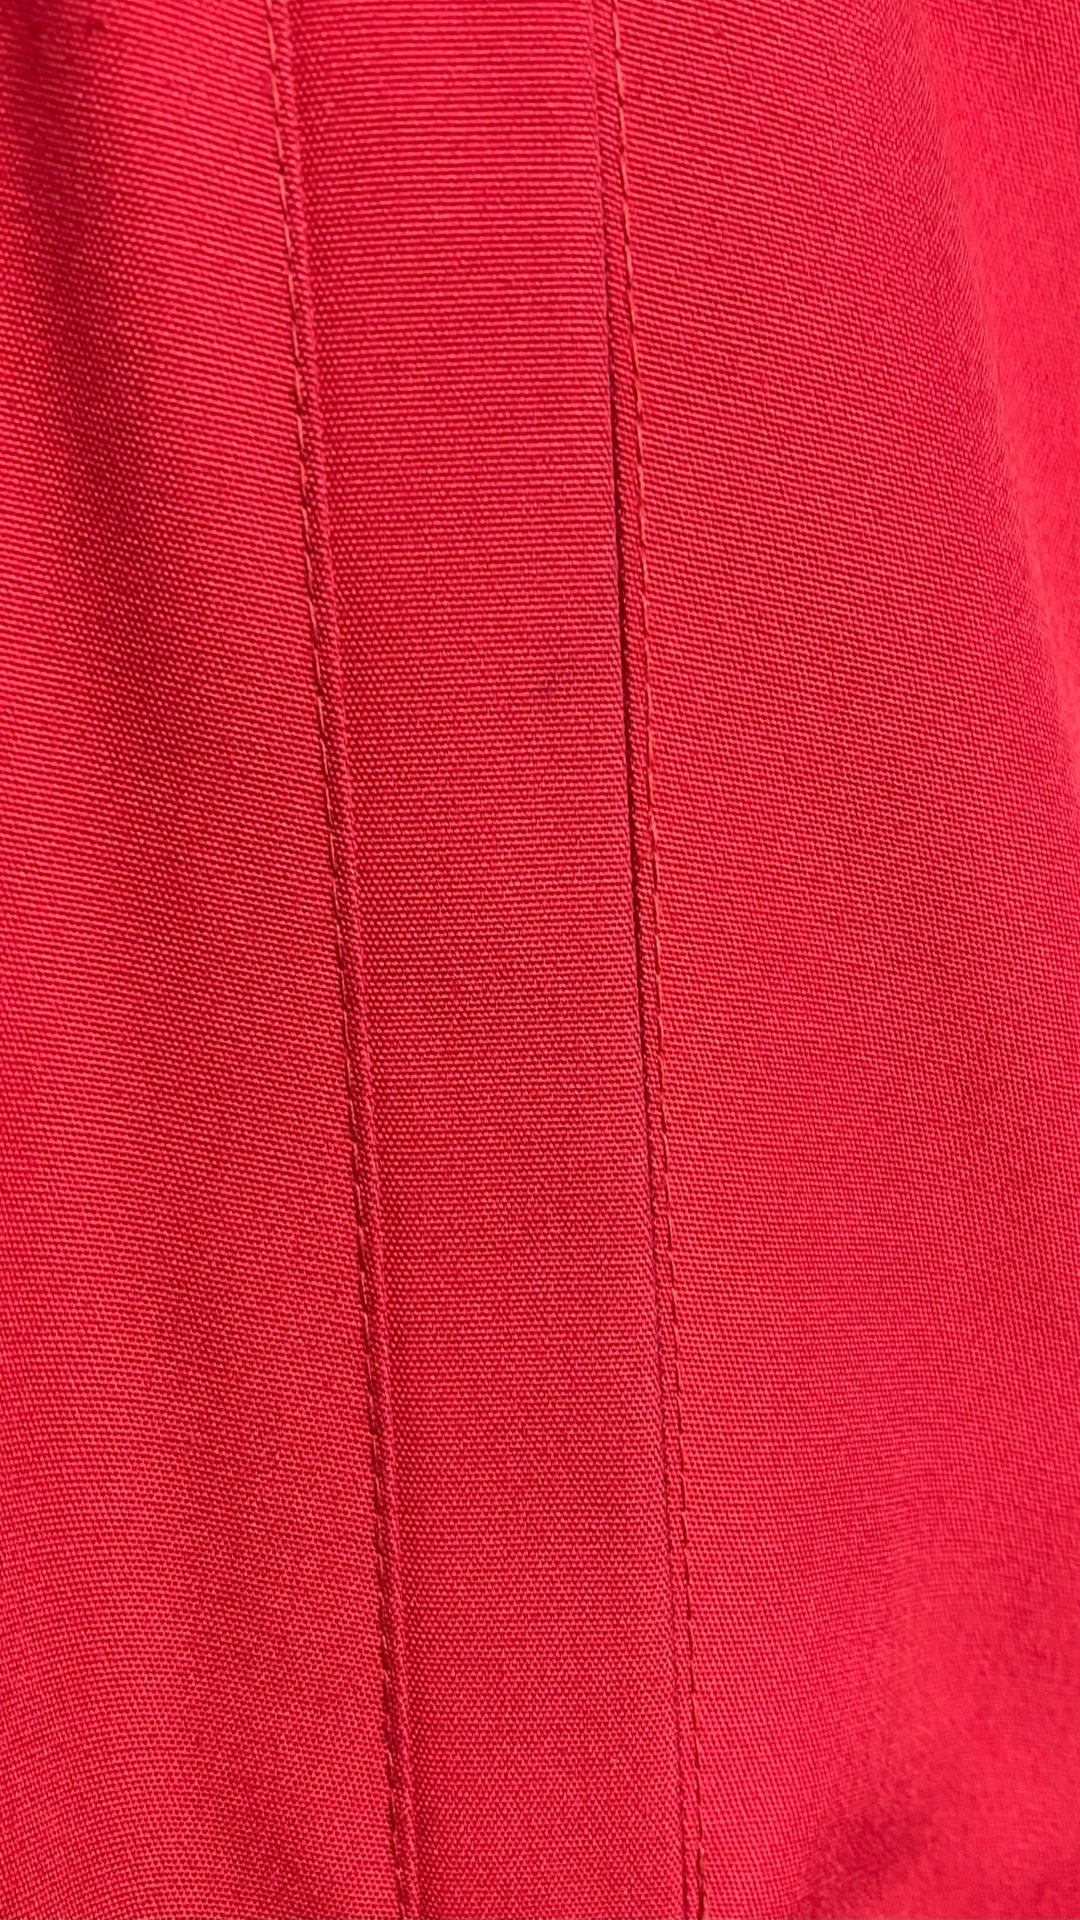 Manteau long vintage style trench rouge, taille small/medium. Vue de petite imperfection/tache.